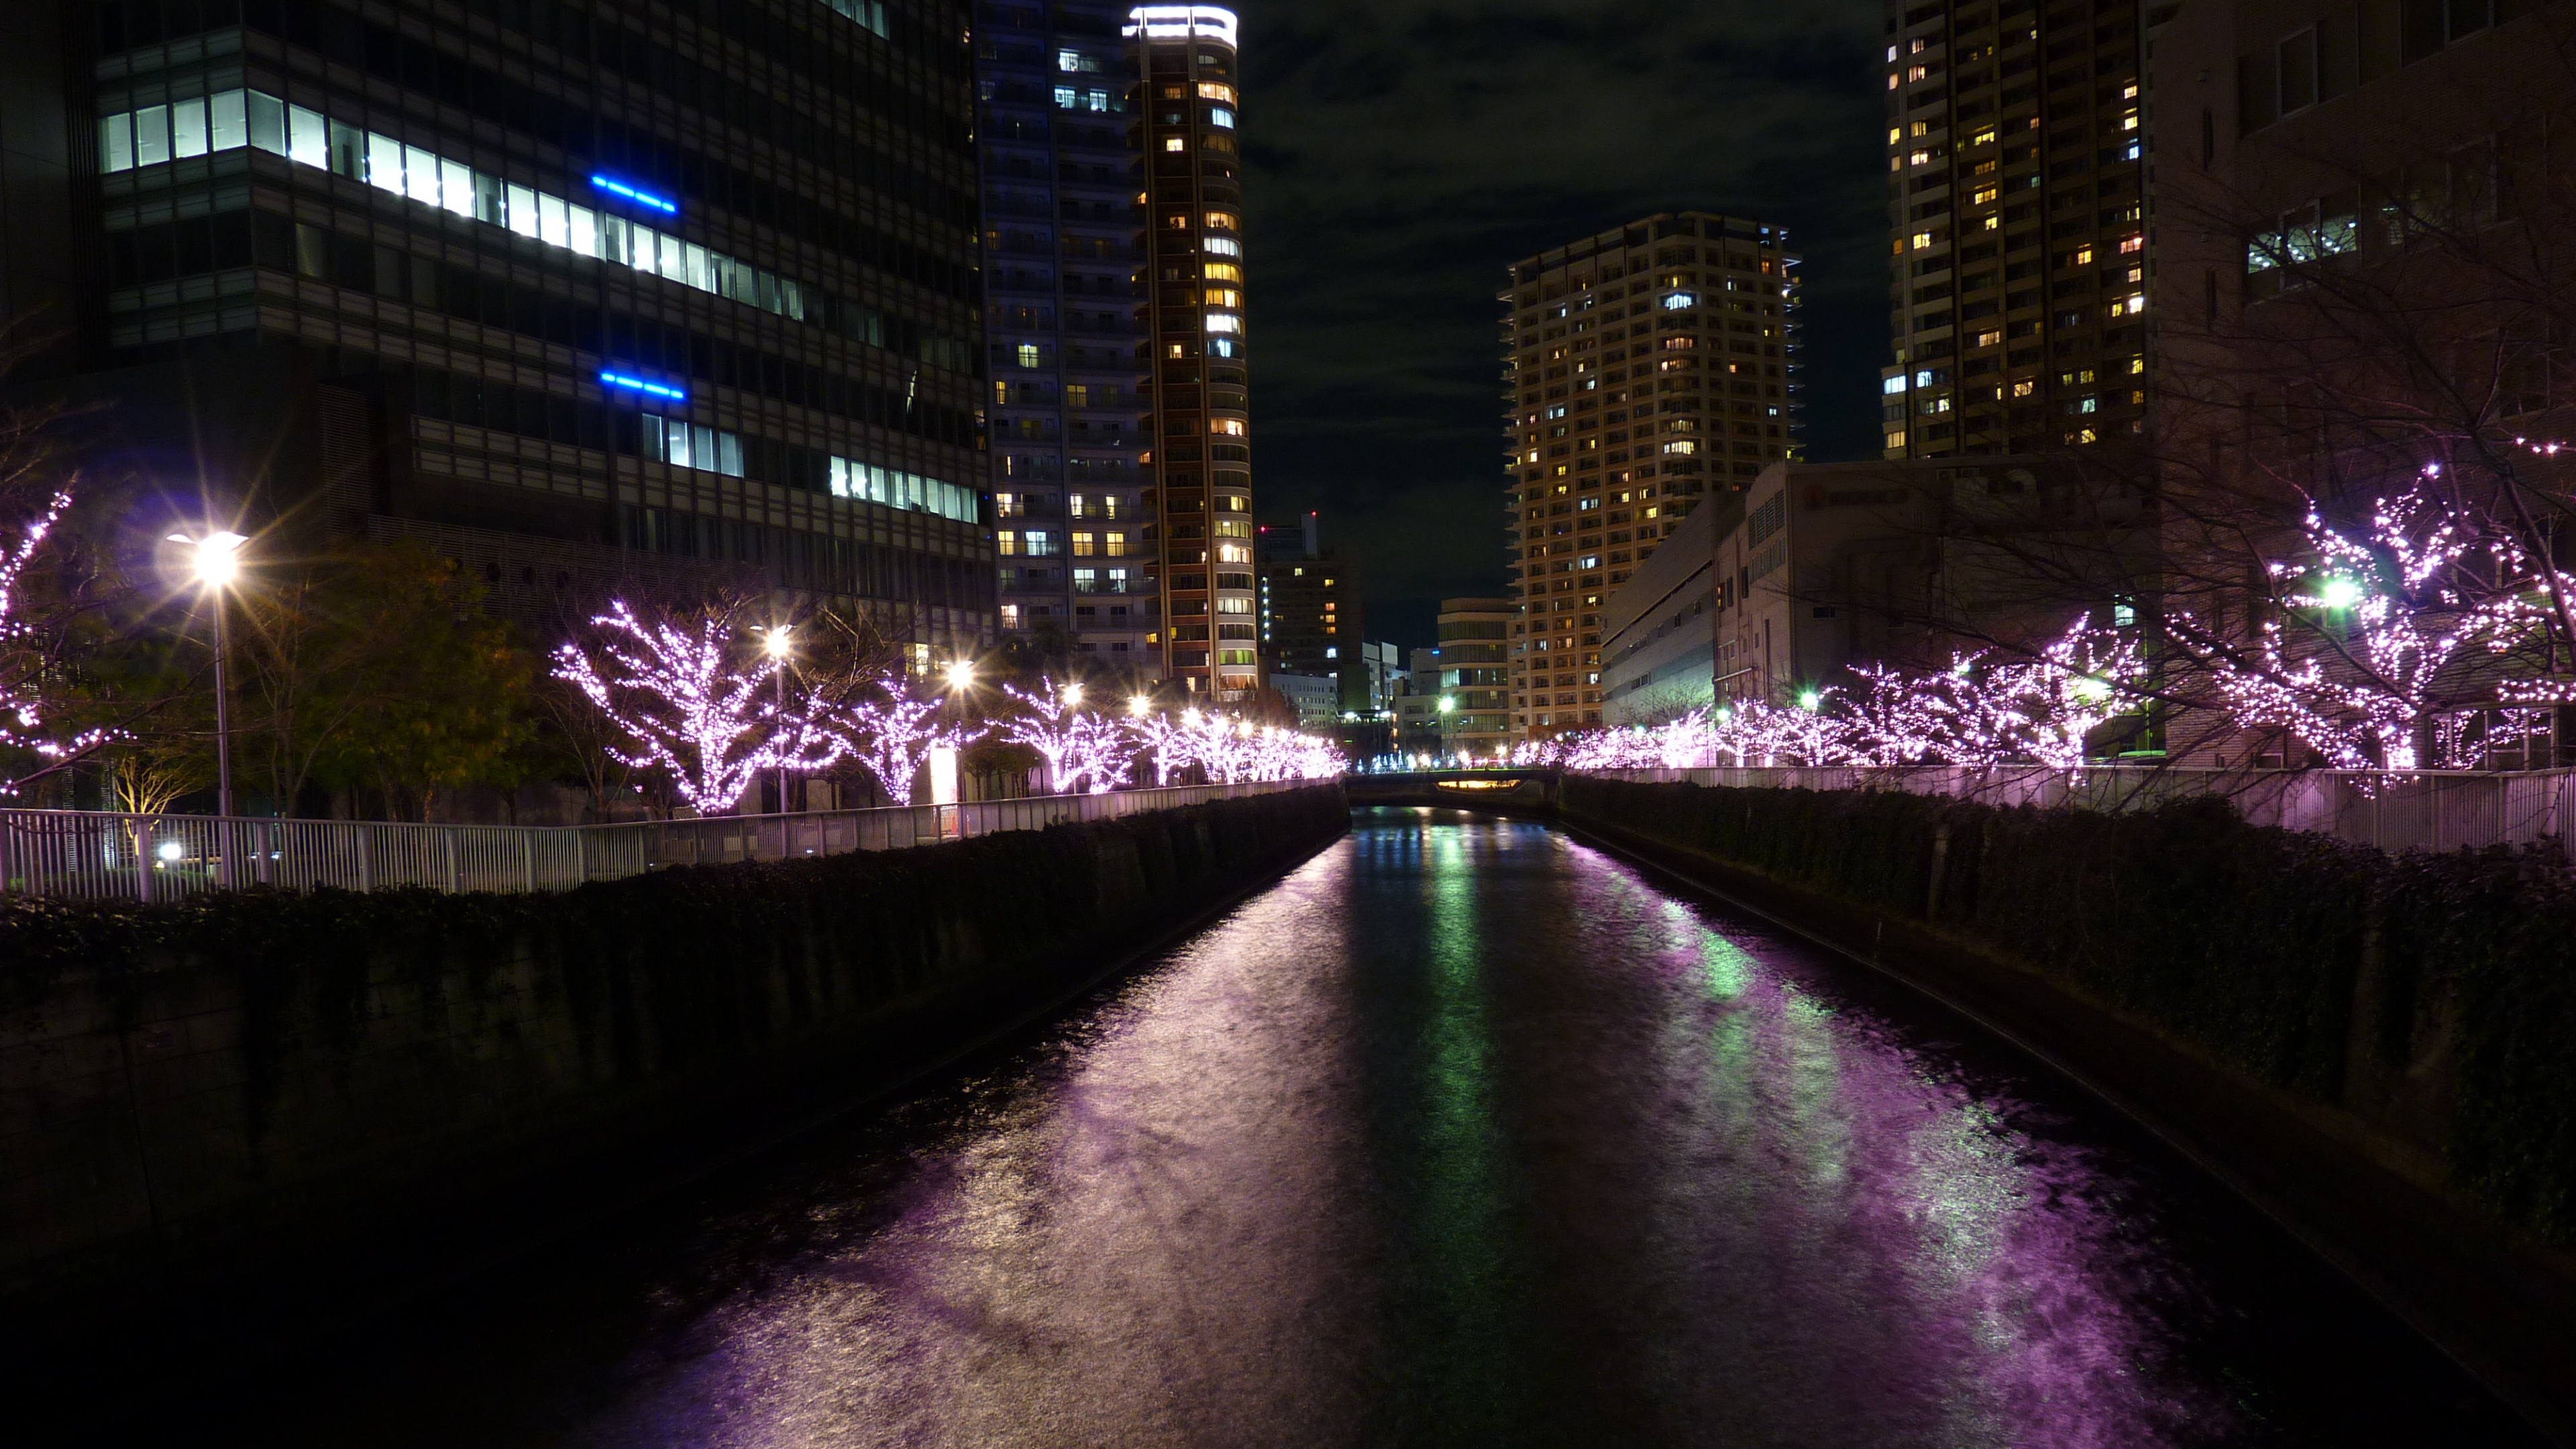 Lumières Violettes Sur le Pont Pendant la Nuit. Wallpaper in 3840x2160 Resolution